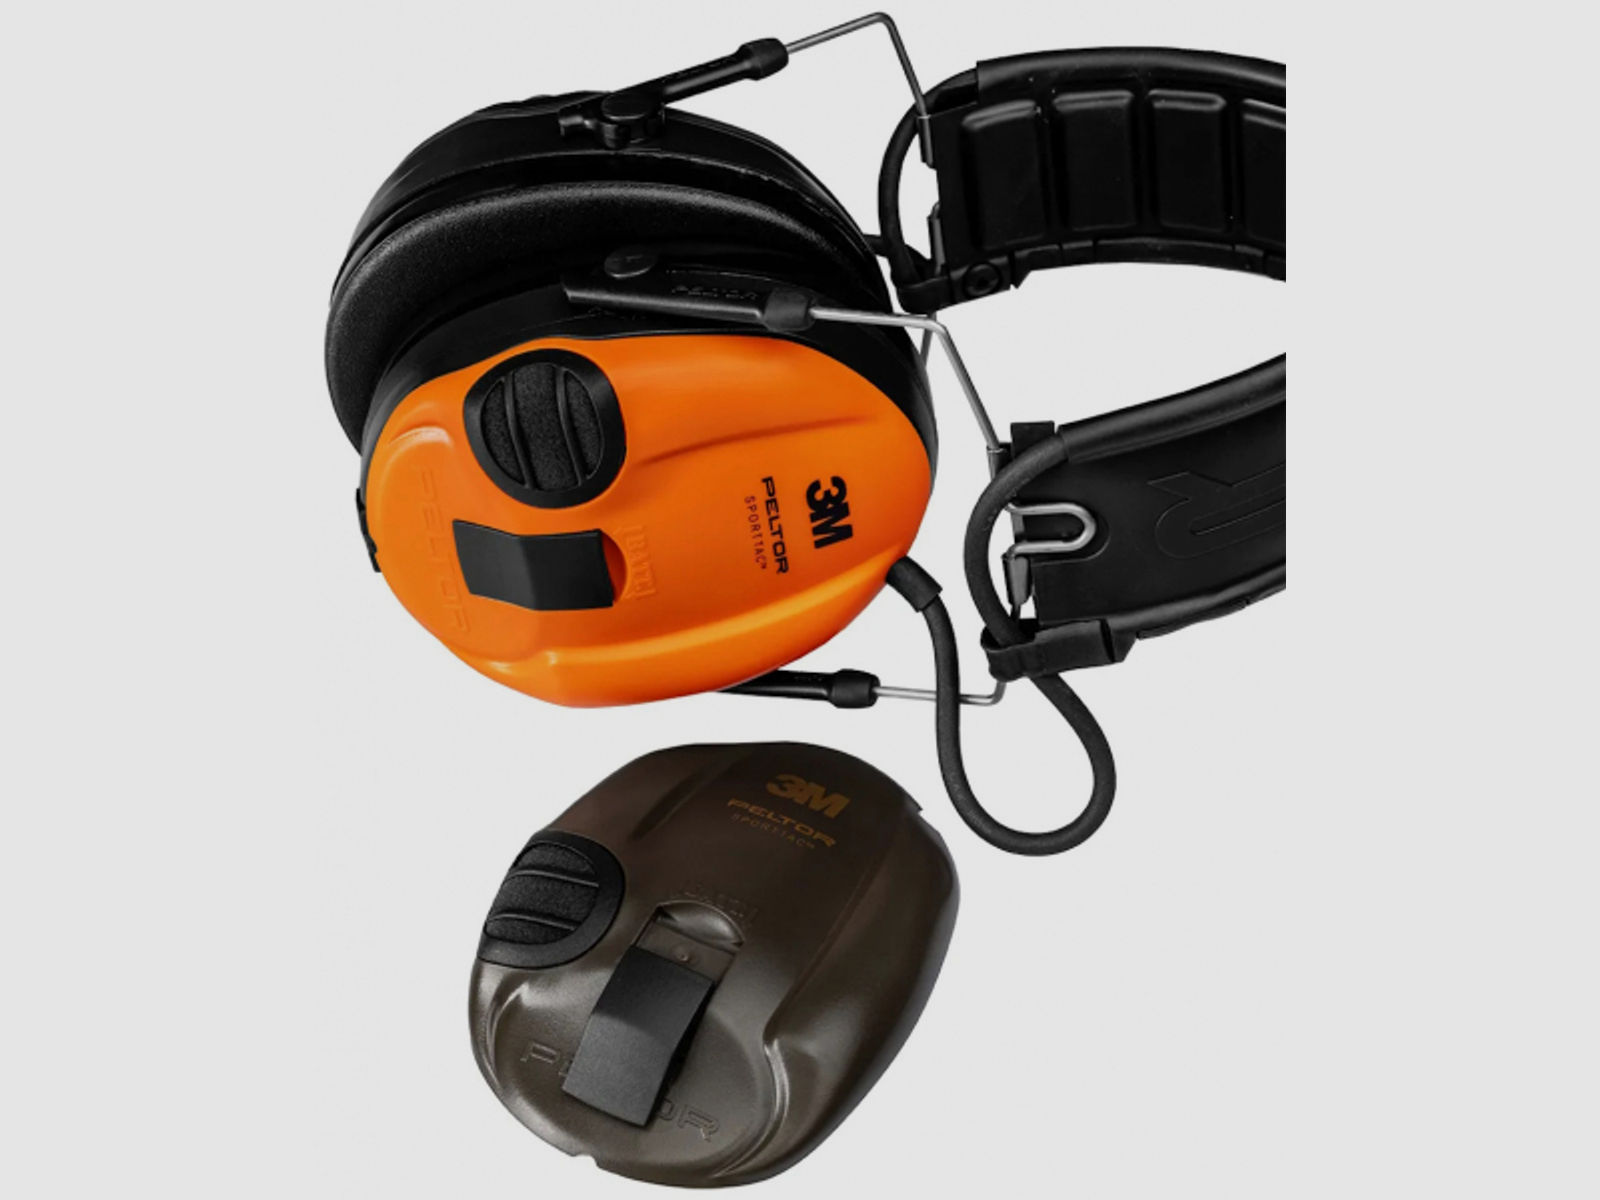 3M Peltor SporTac Kapselgehörschützer - Taktischer Gehörschutz - grün mit orangen Wechselkapseln